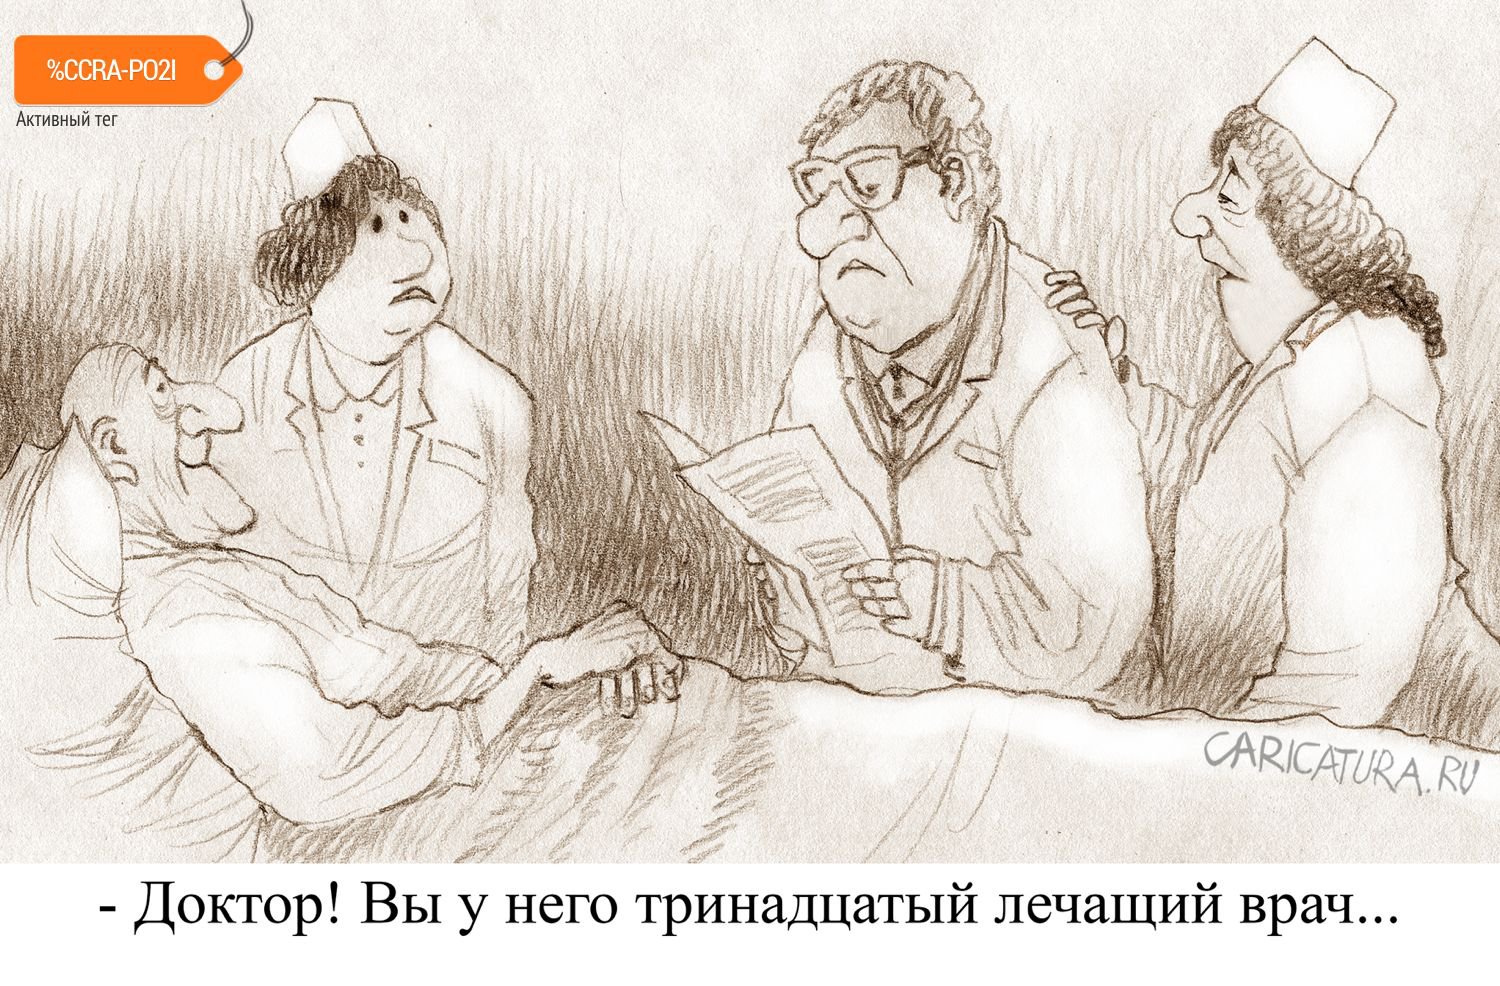 Карикатура "Чертова дюжина", Александр Попов